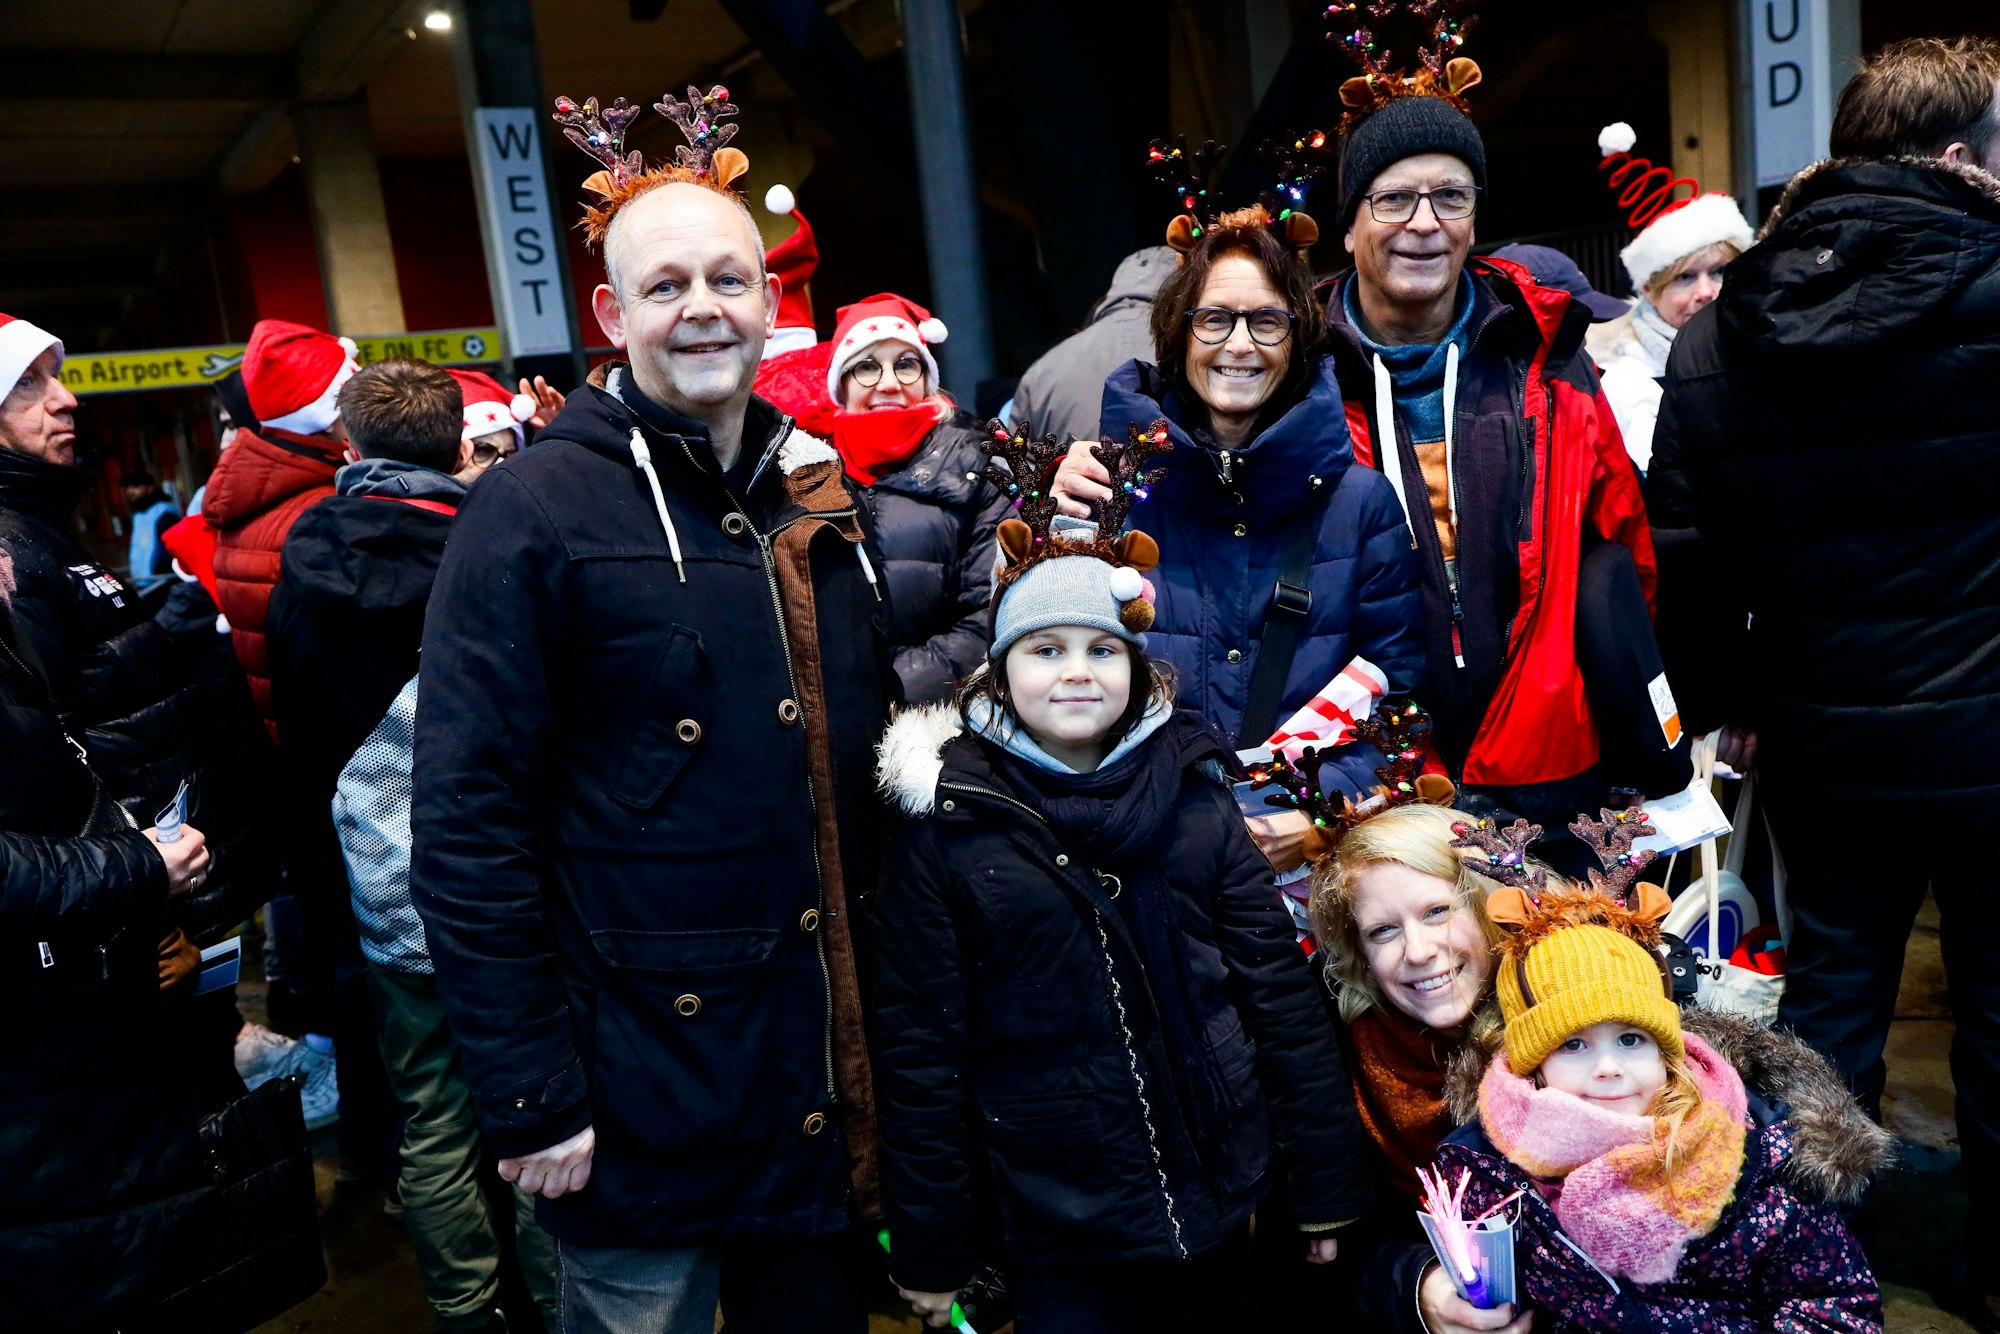 Familie Dragovoc aus Pulheim bei Köln bei „Loss mer Weihnachtsleeder singe“.